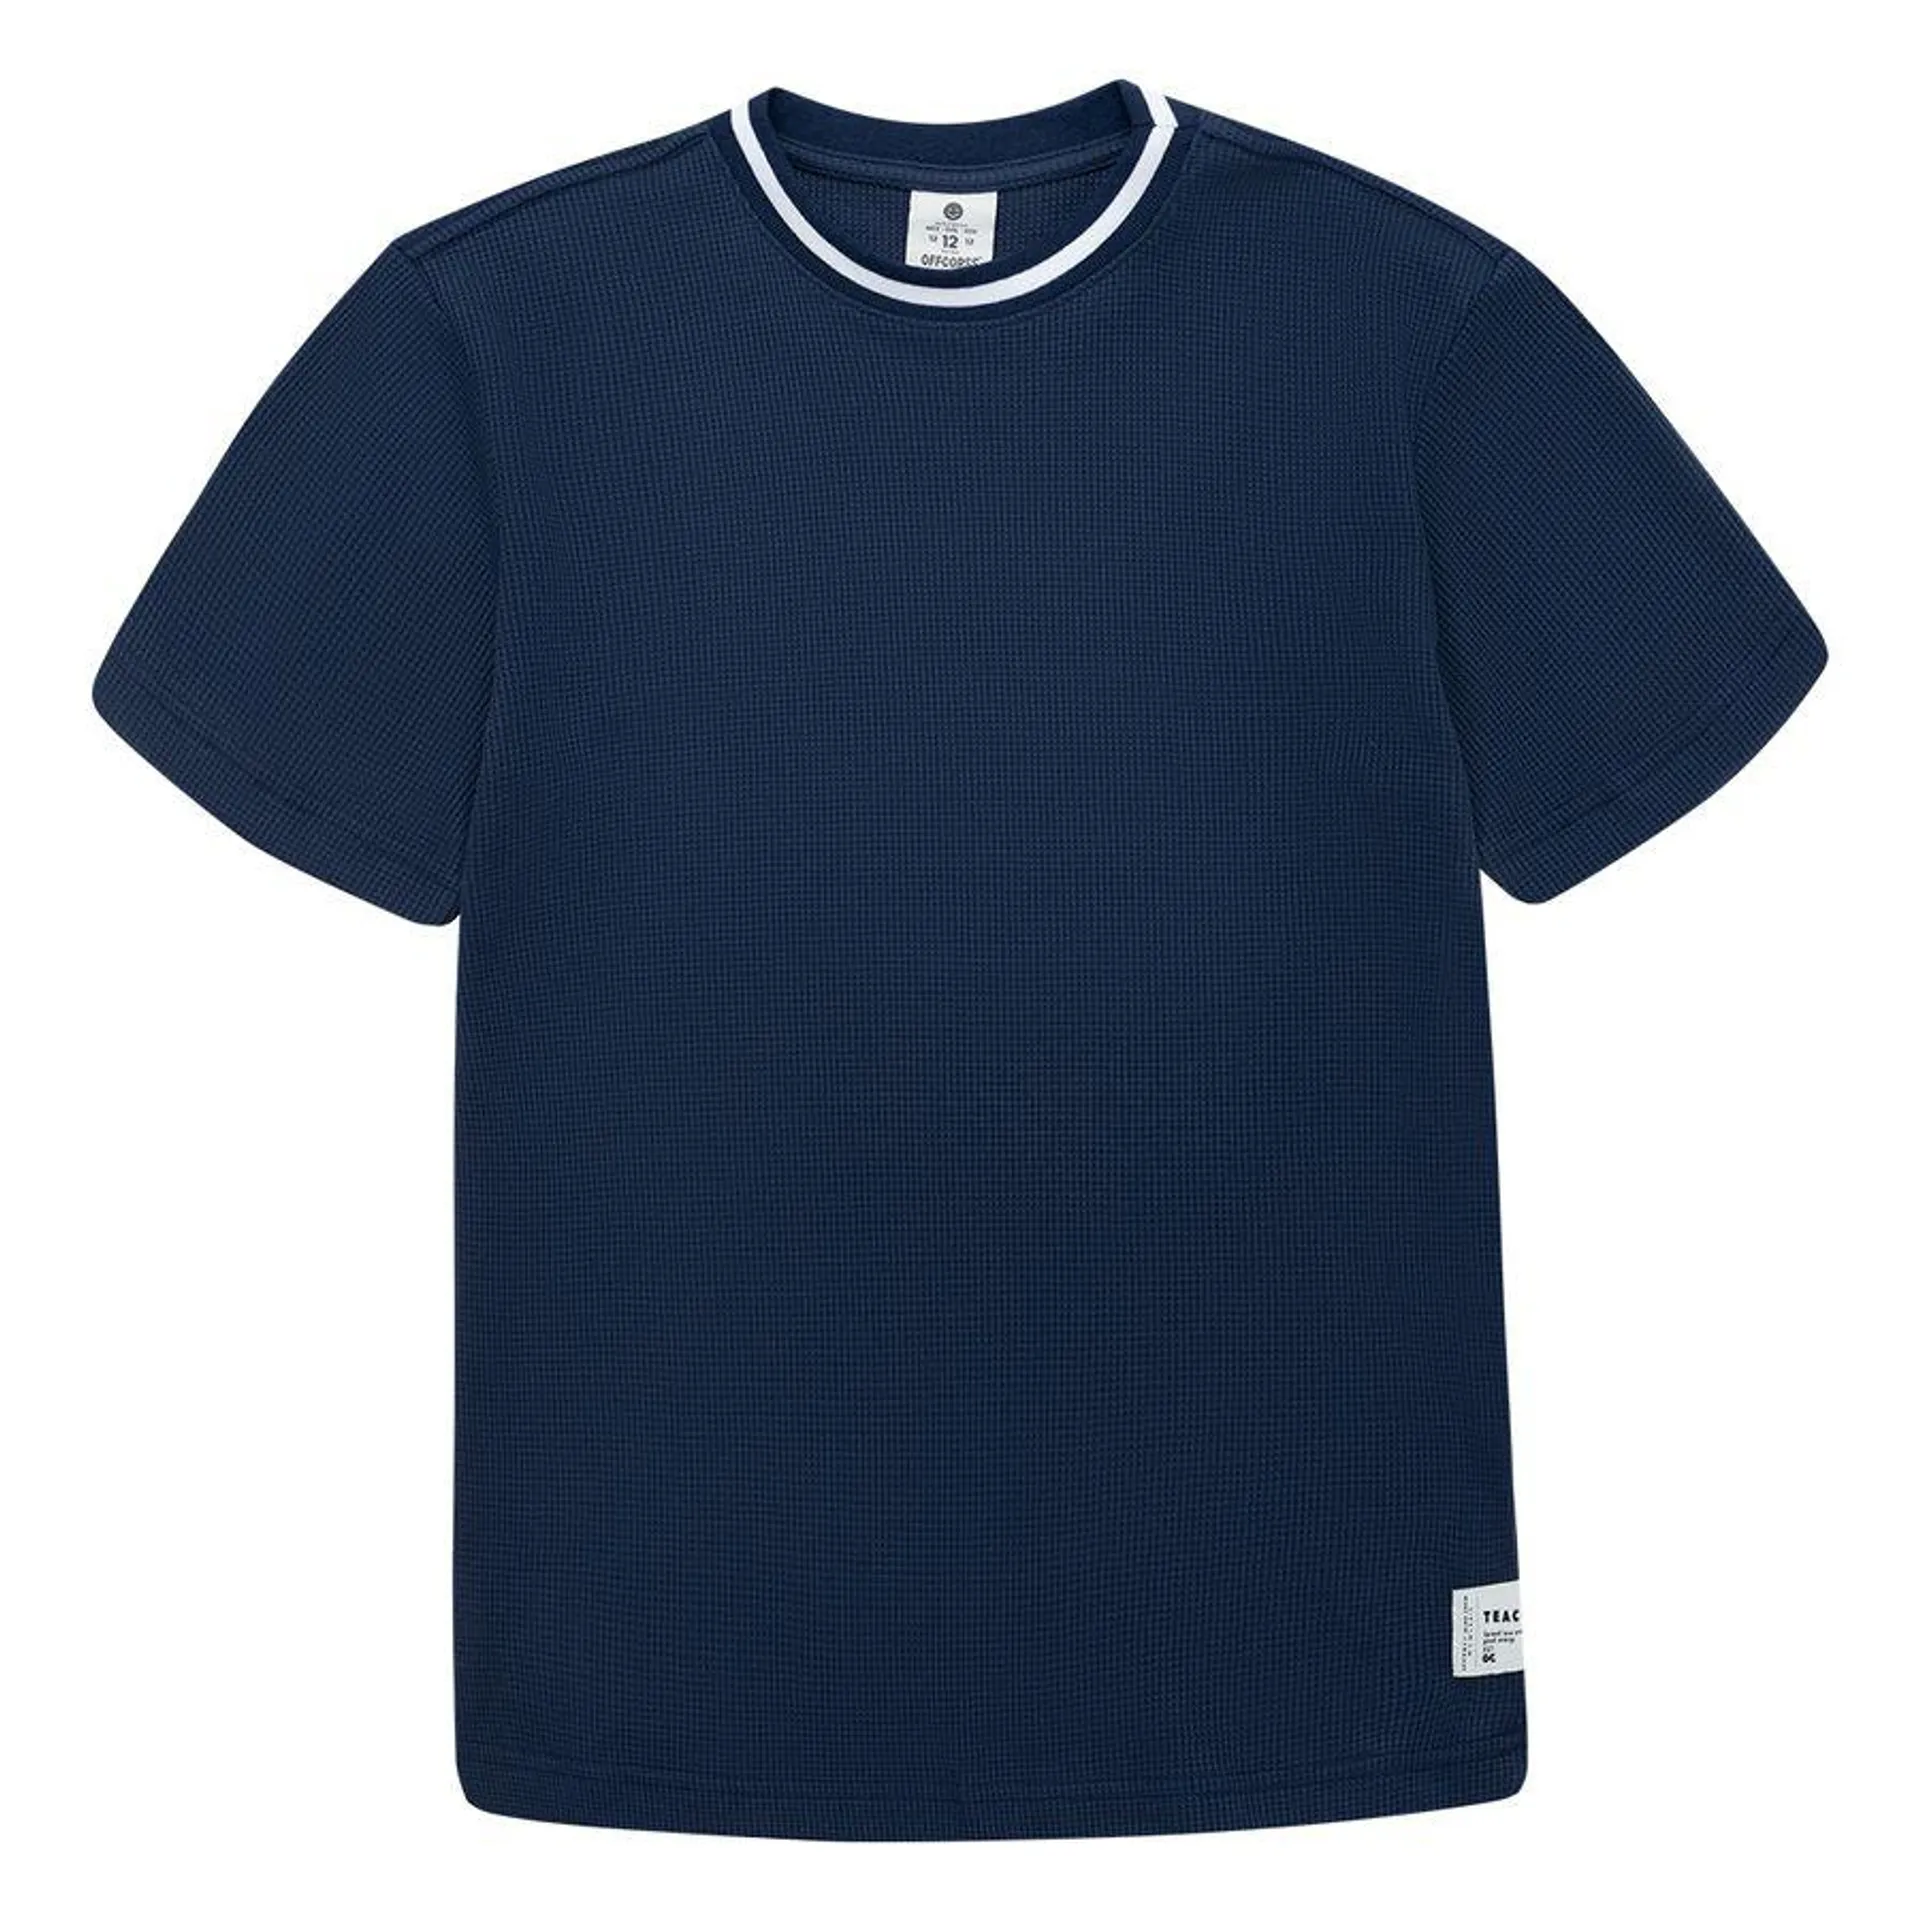 Camiseta manga corta para niño - Azul 8